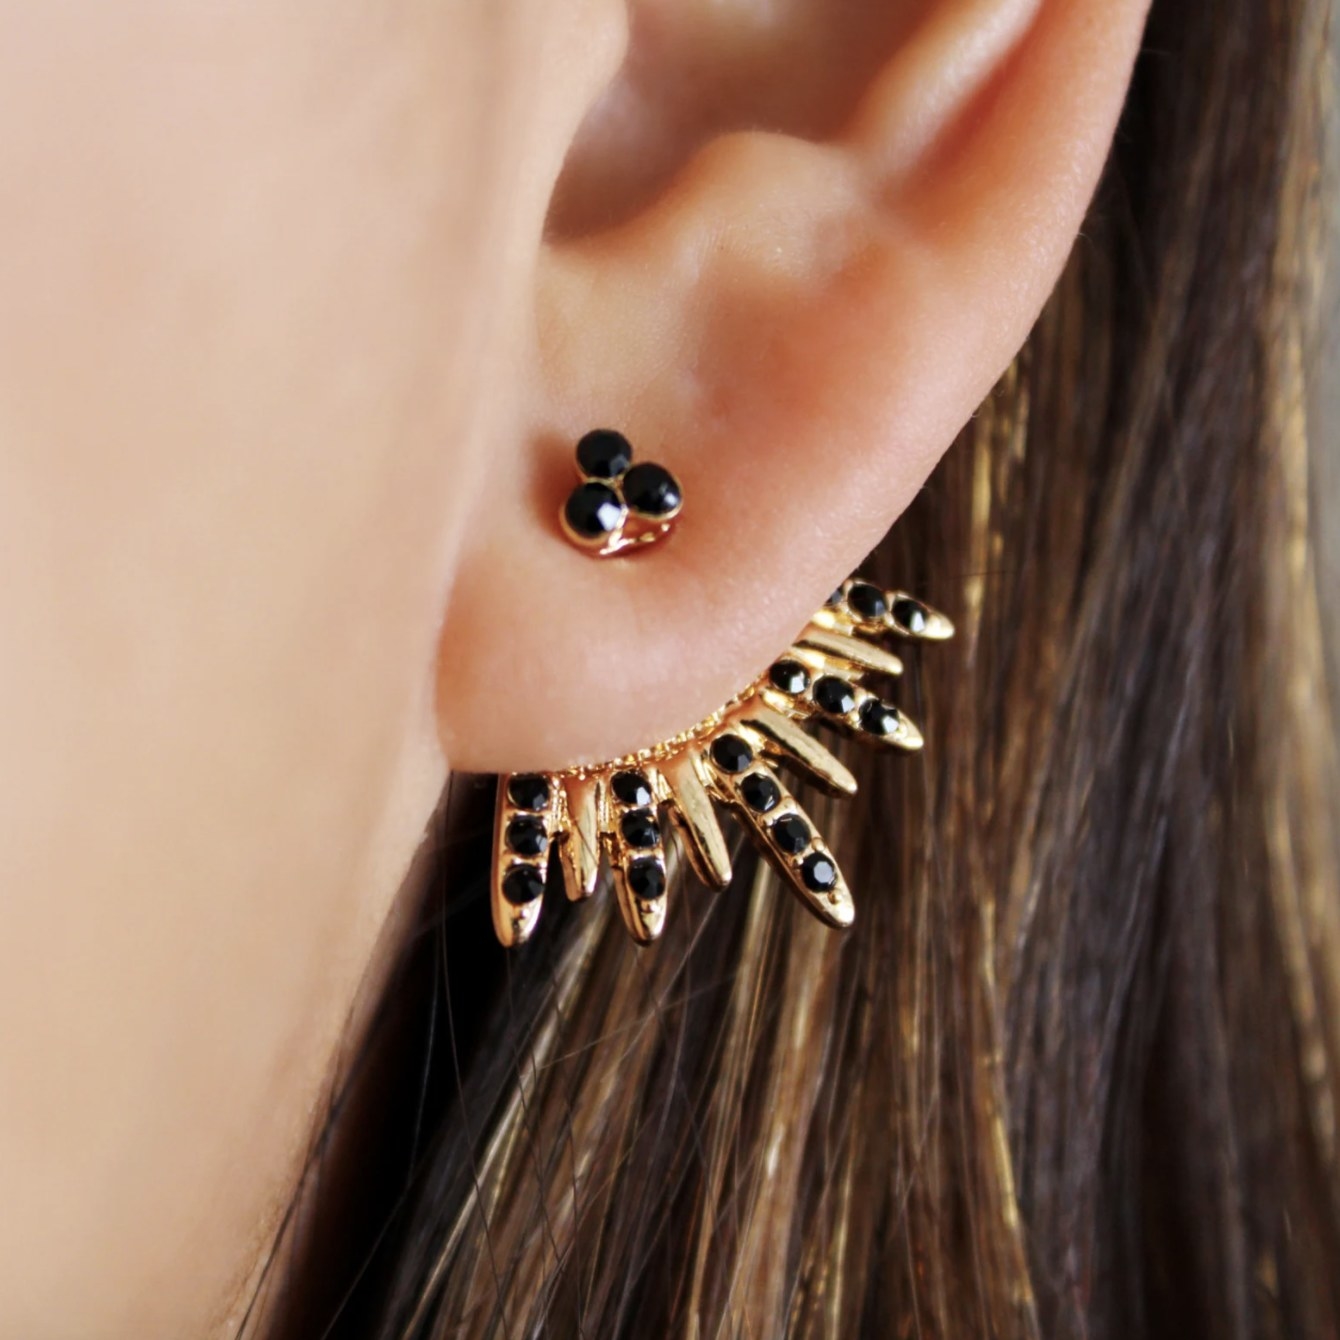 model wearing the earrings